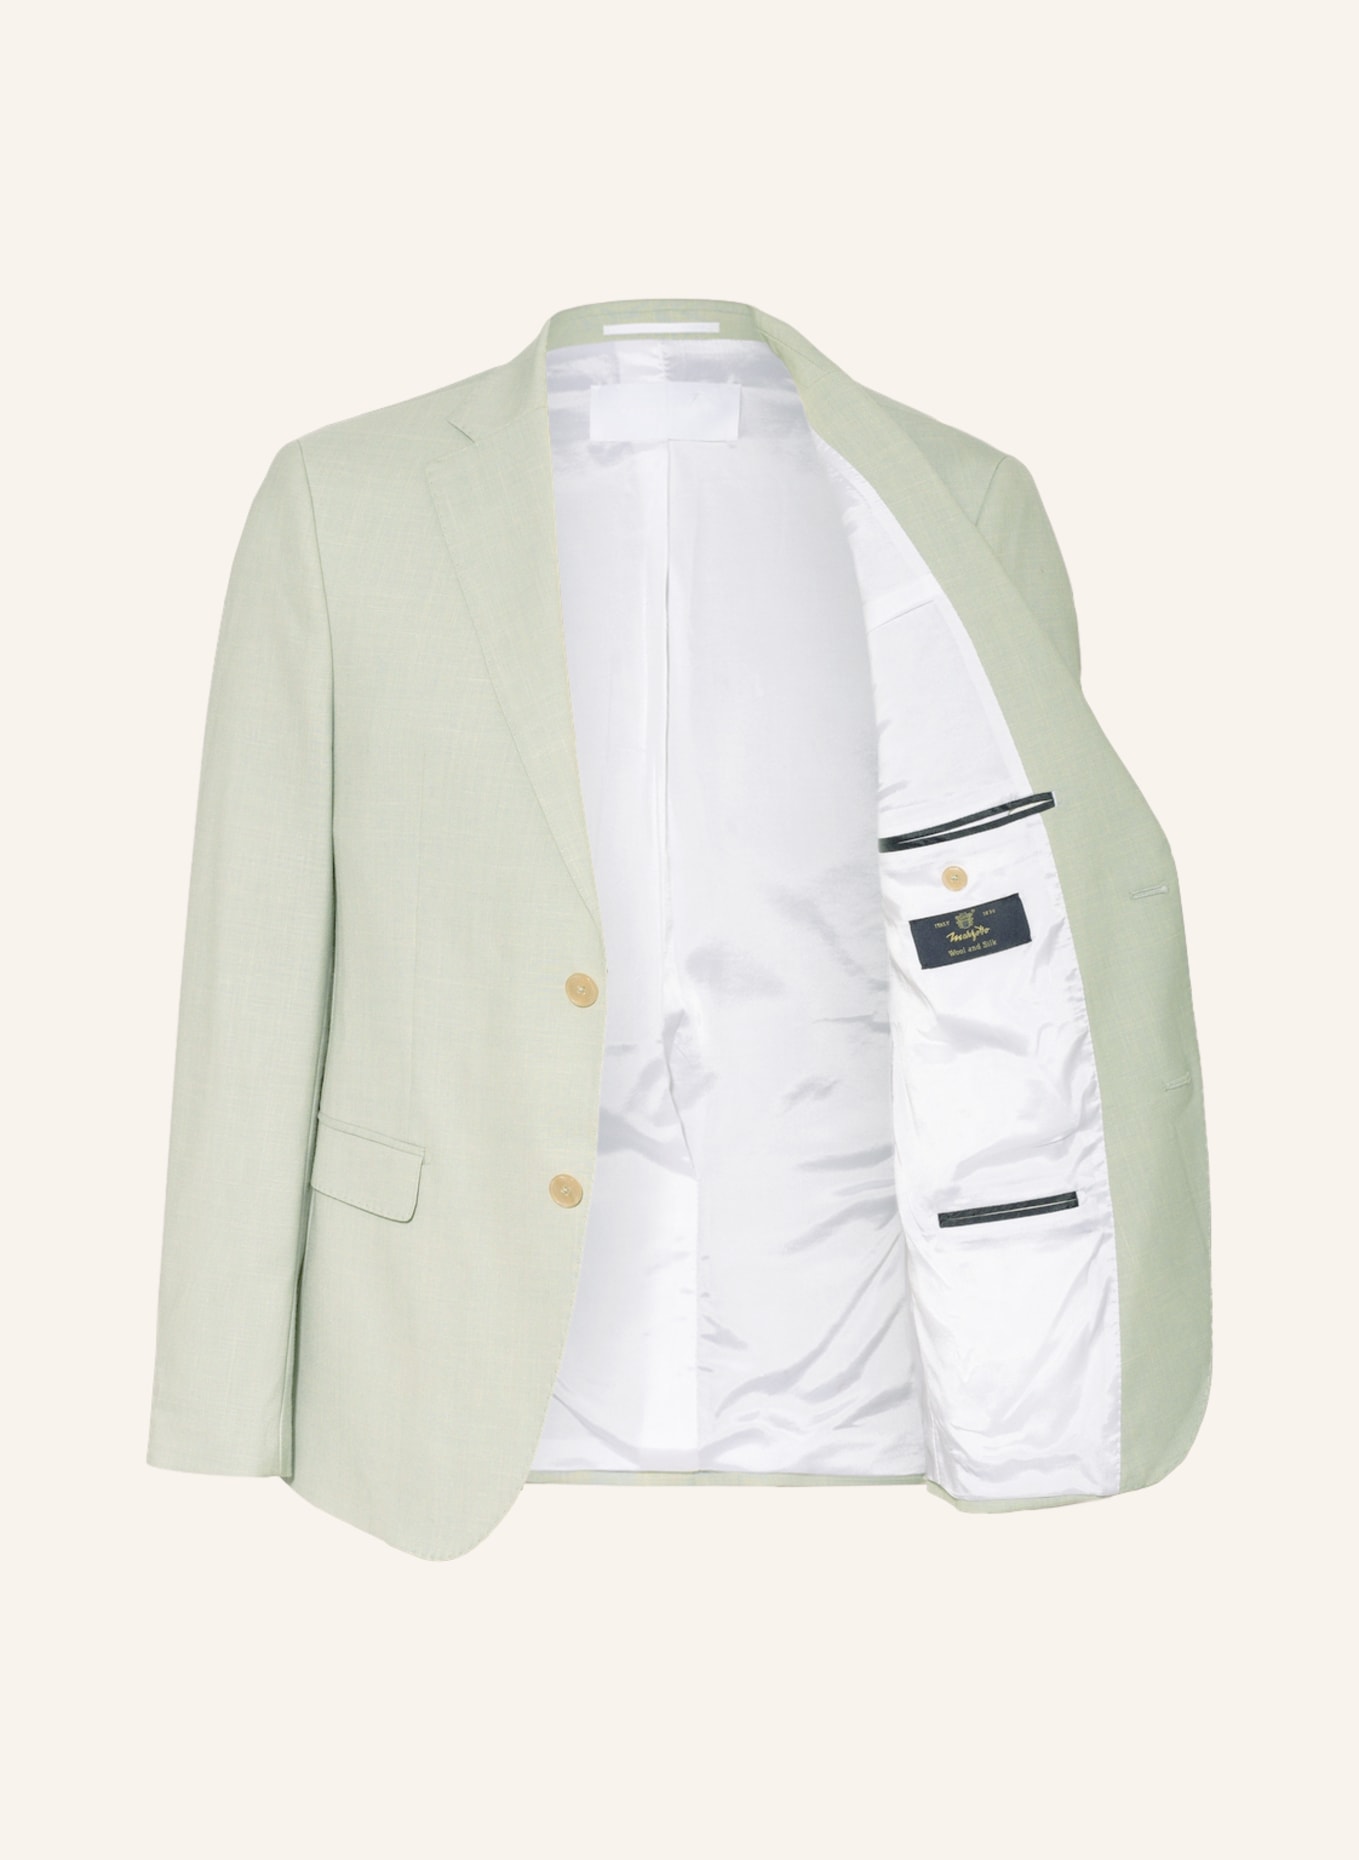 BALDESSARINI Suit jacket regular fit, Color: 5110 Green Bay (Image 4)